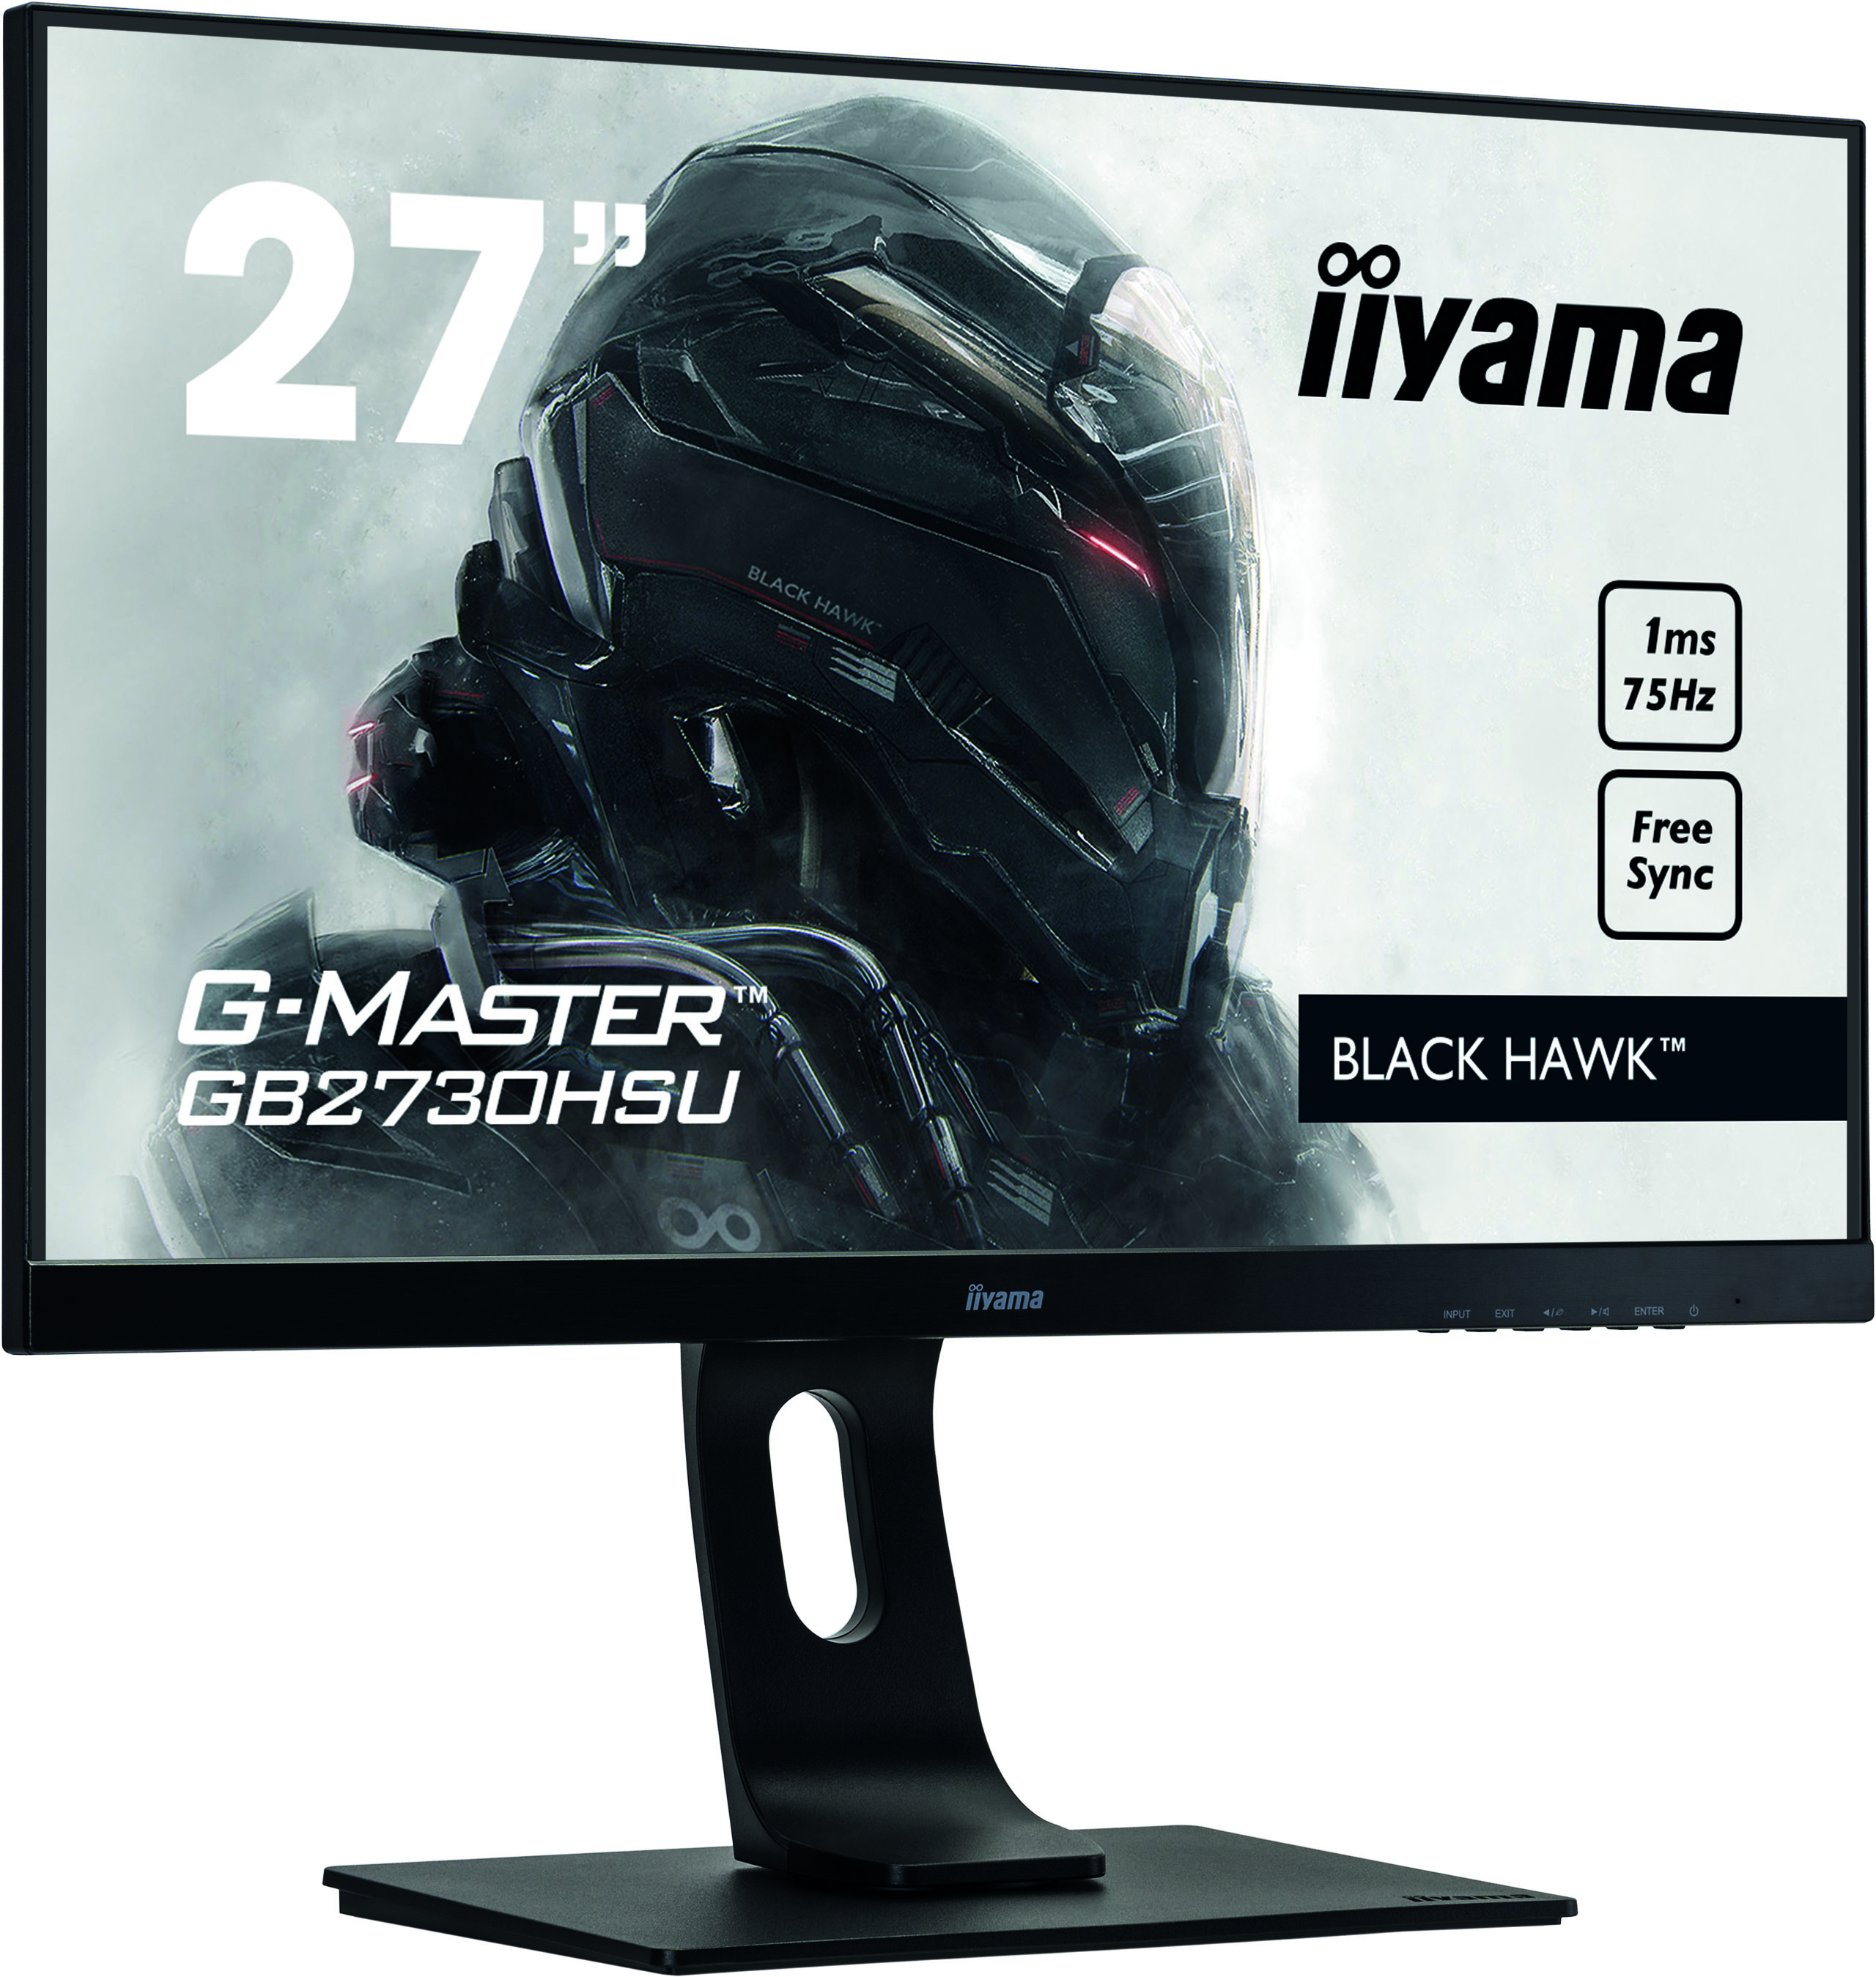 Iiyama G-MASTER GB2730HSU-B1 BLACK HAWK  | 27" | 75hz | Gaming Monitor